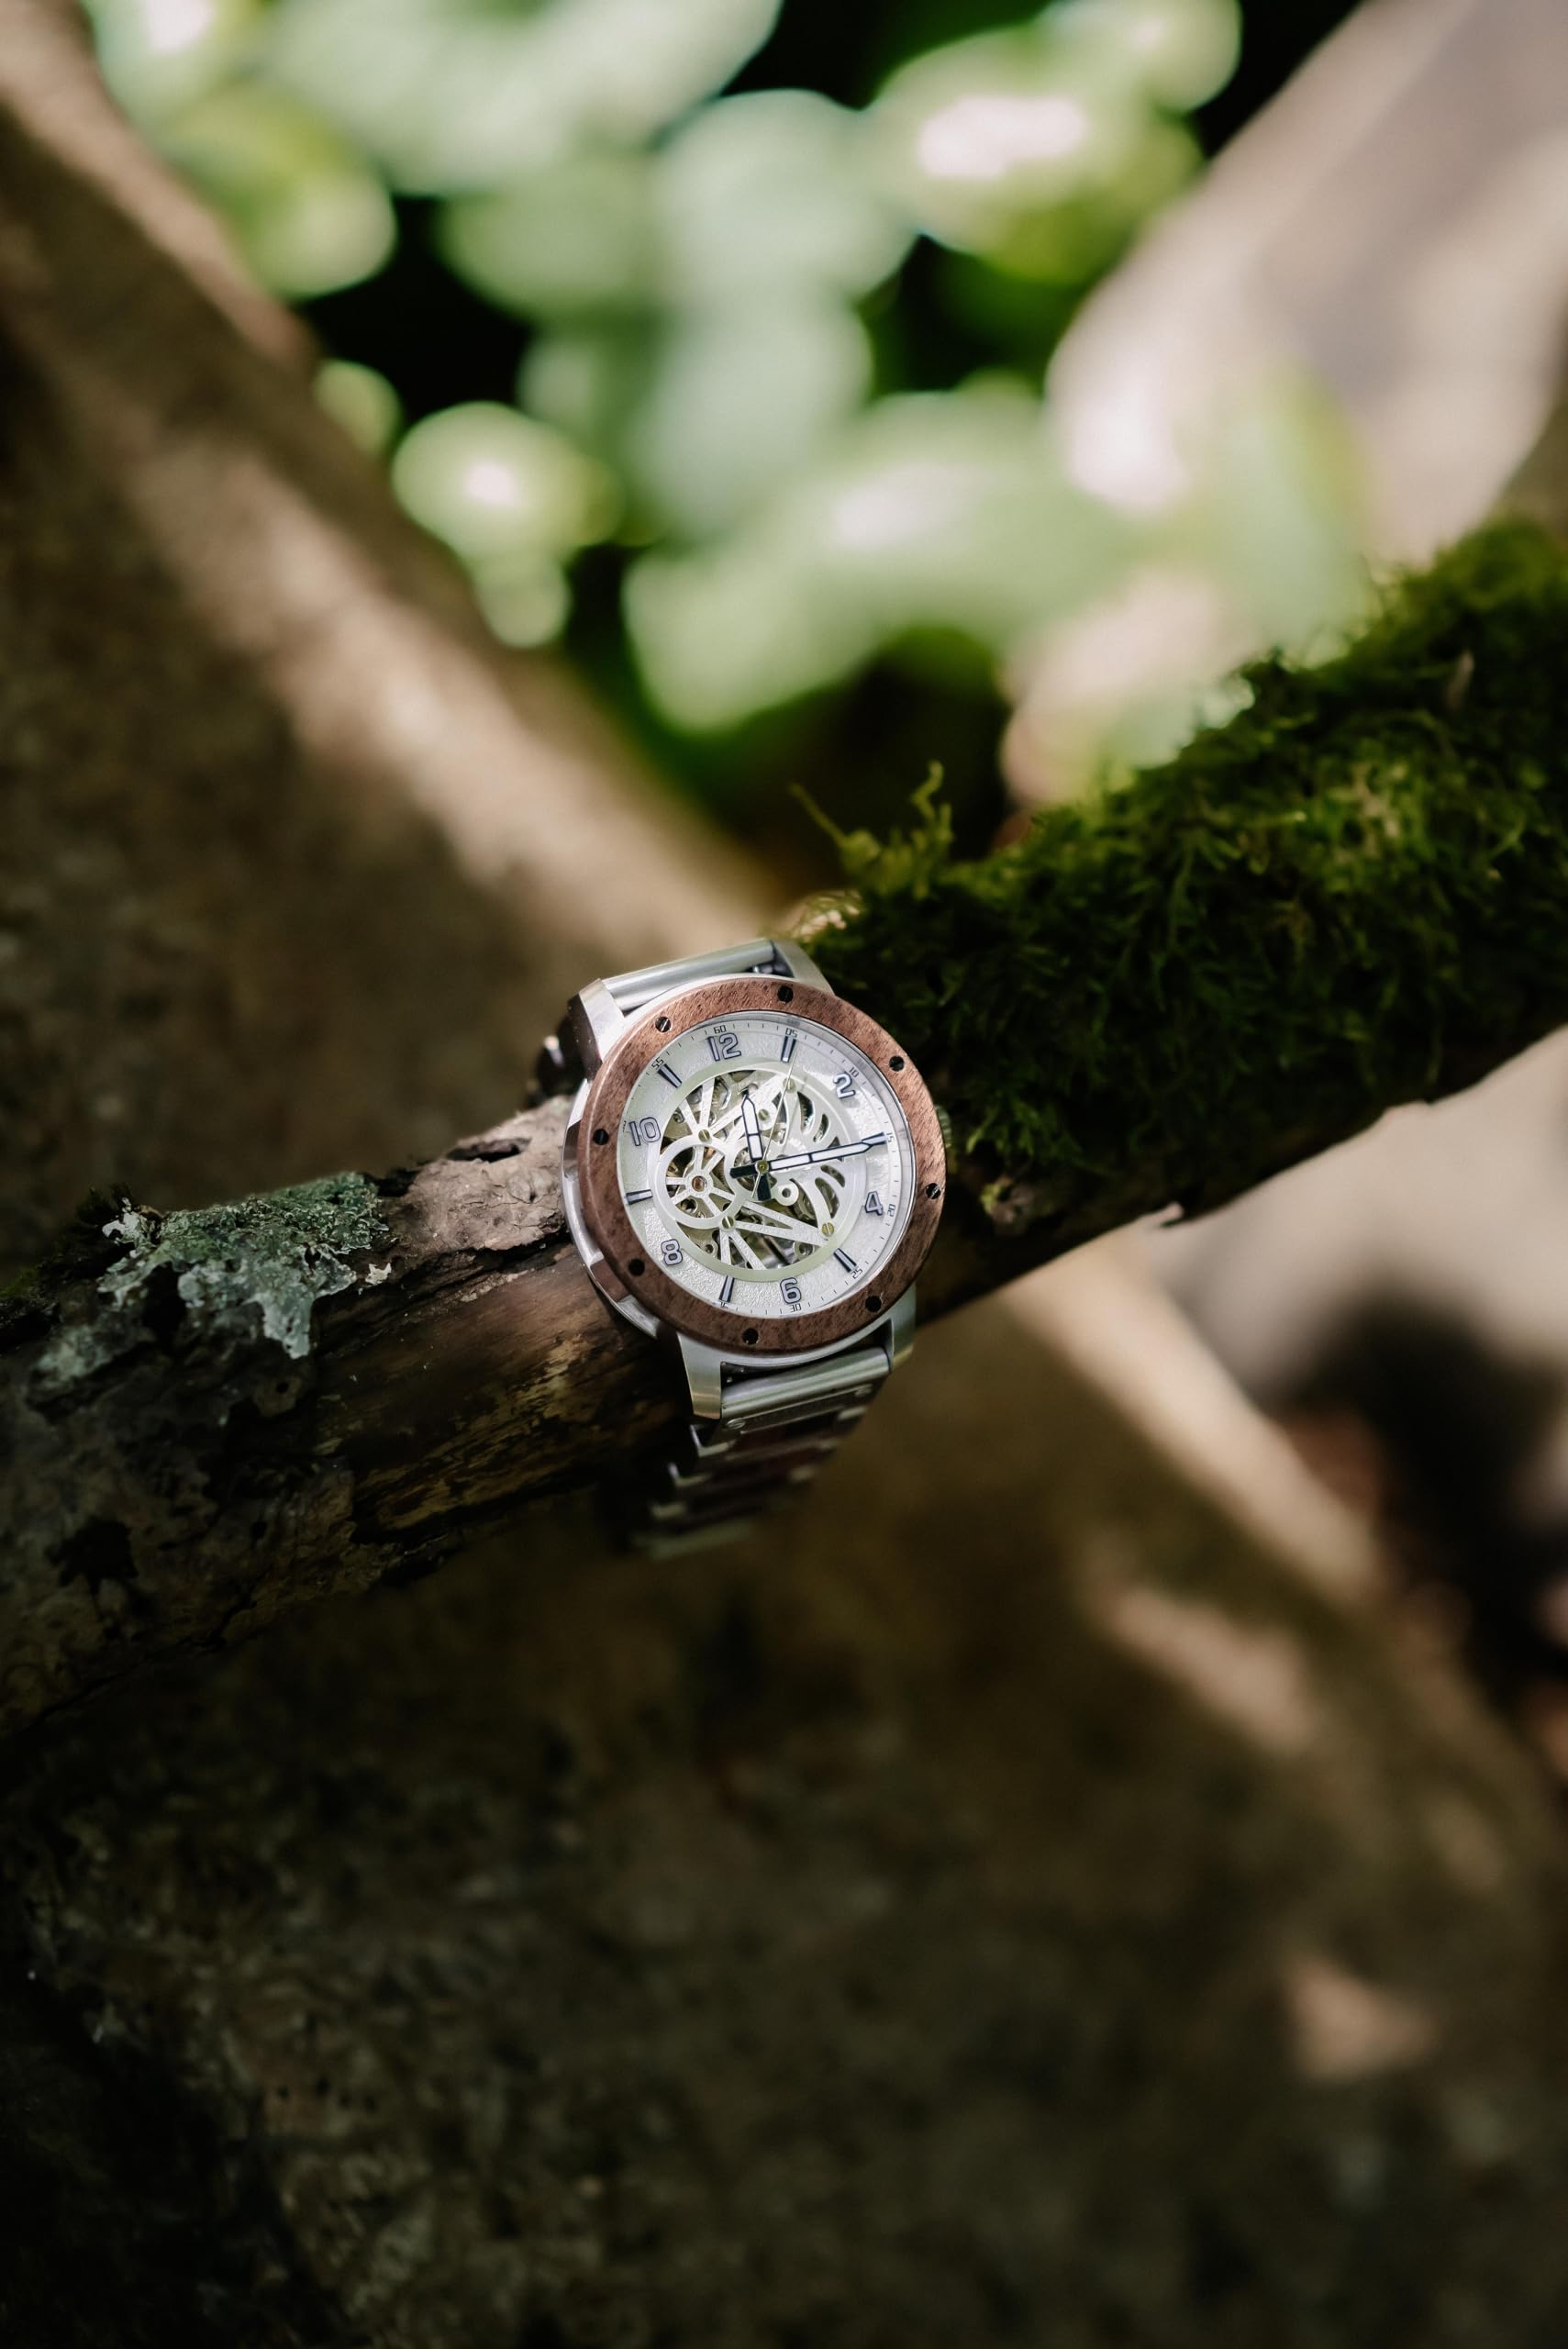 WATCHTHIS Tokyo Luxus Herrenuhr - Handgefertigte mechanische Automatik Armbanduhr aus Echtholz & Edelstahl, Präzises Uhrwerk, Nachhaltig, Uhr inkl. Box